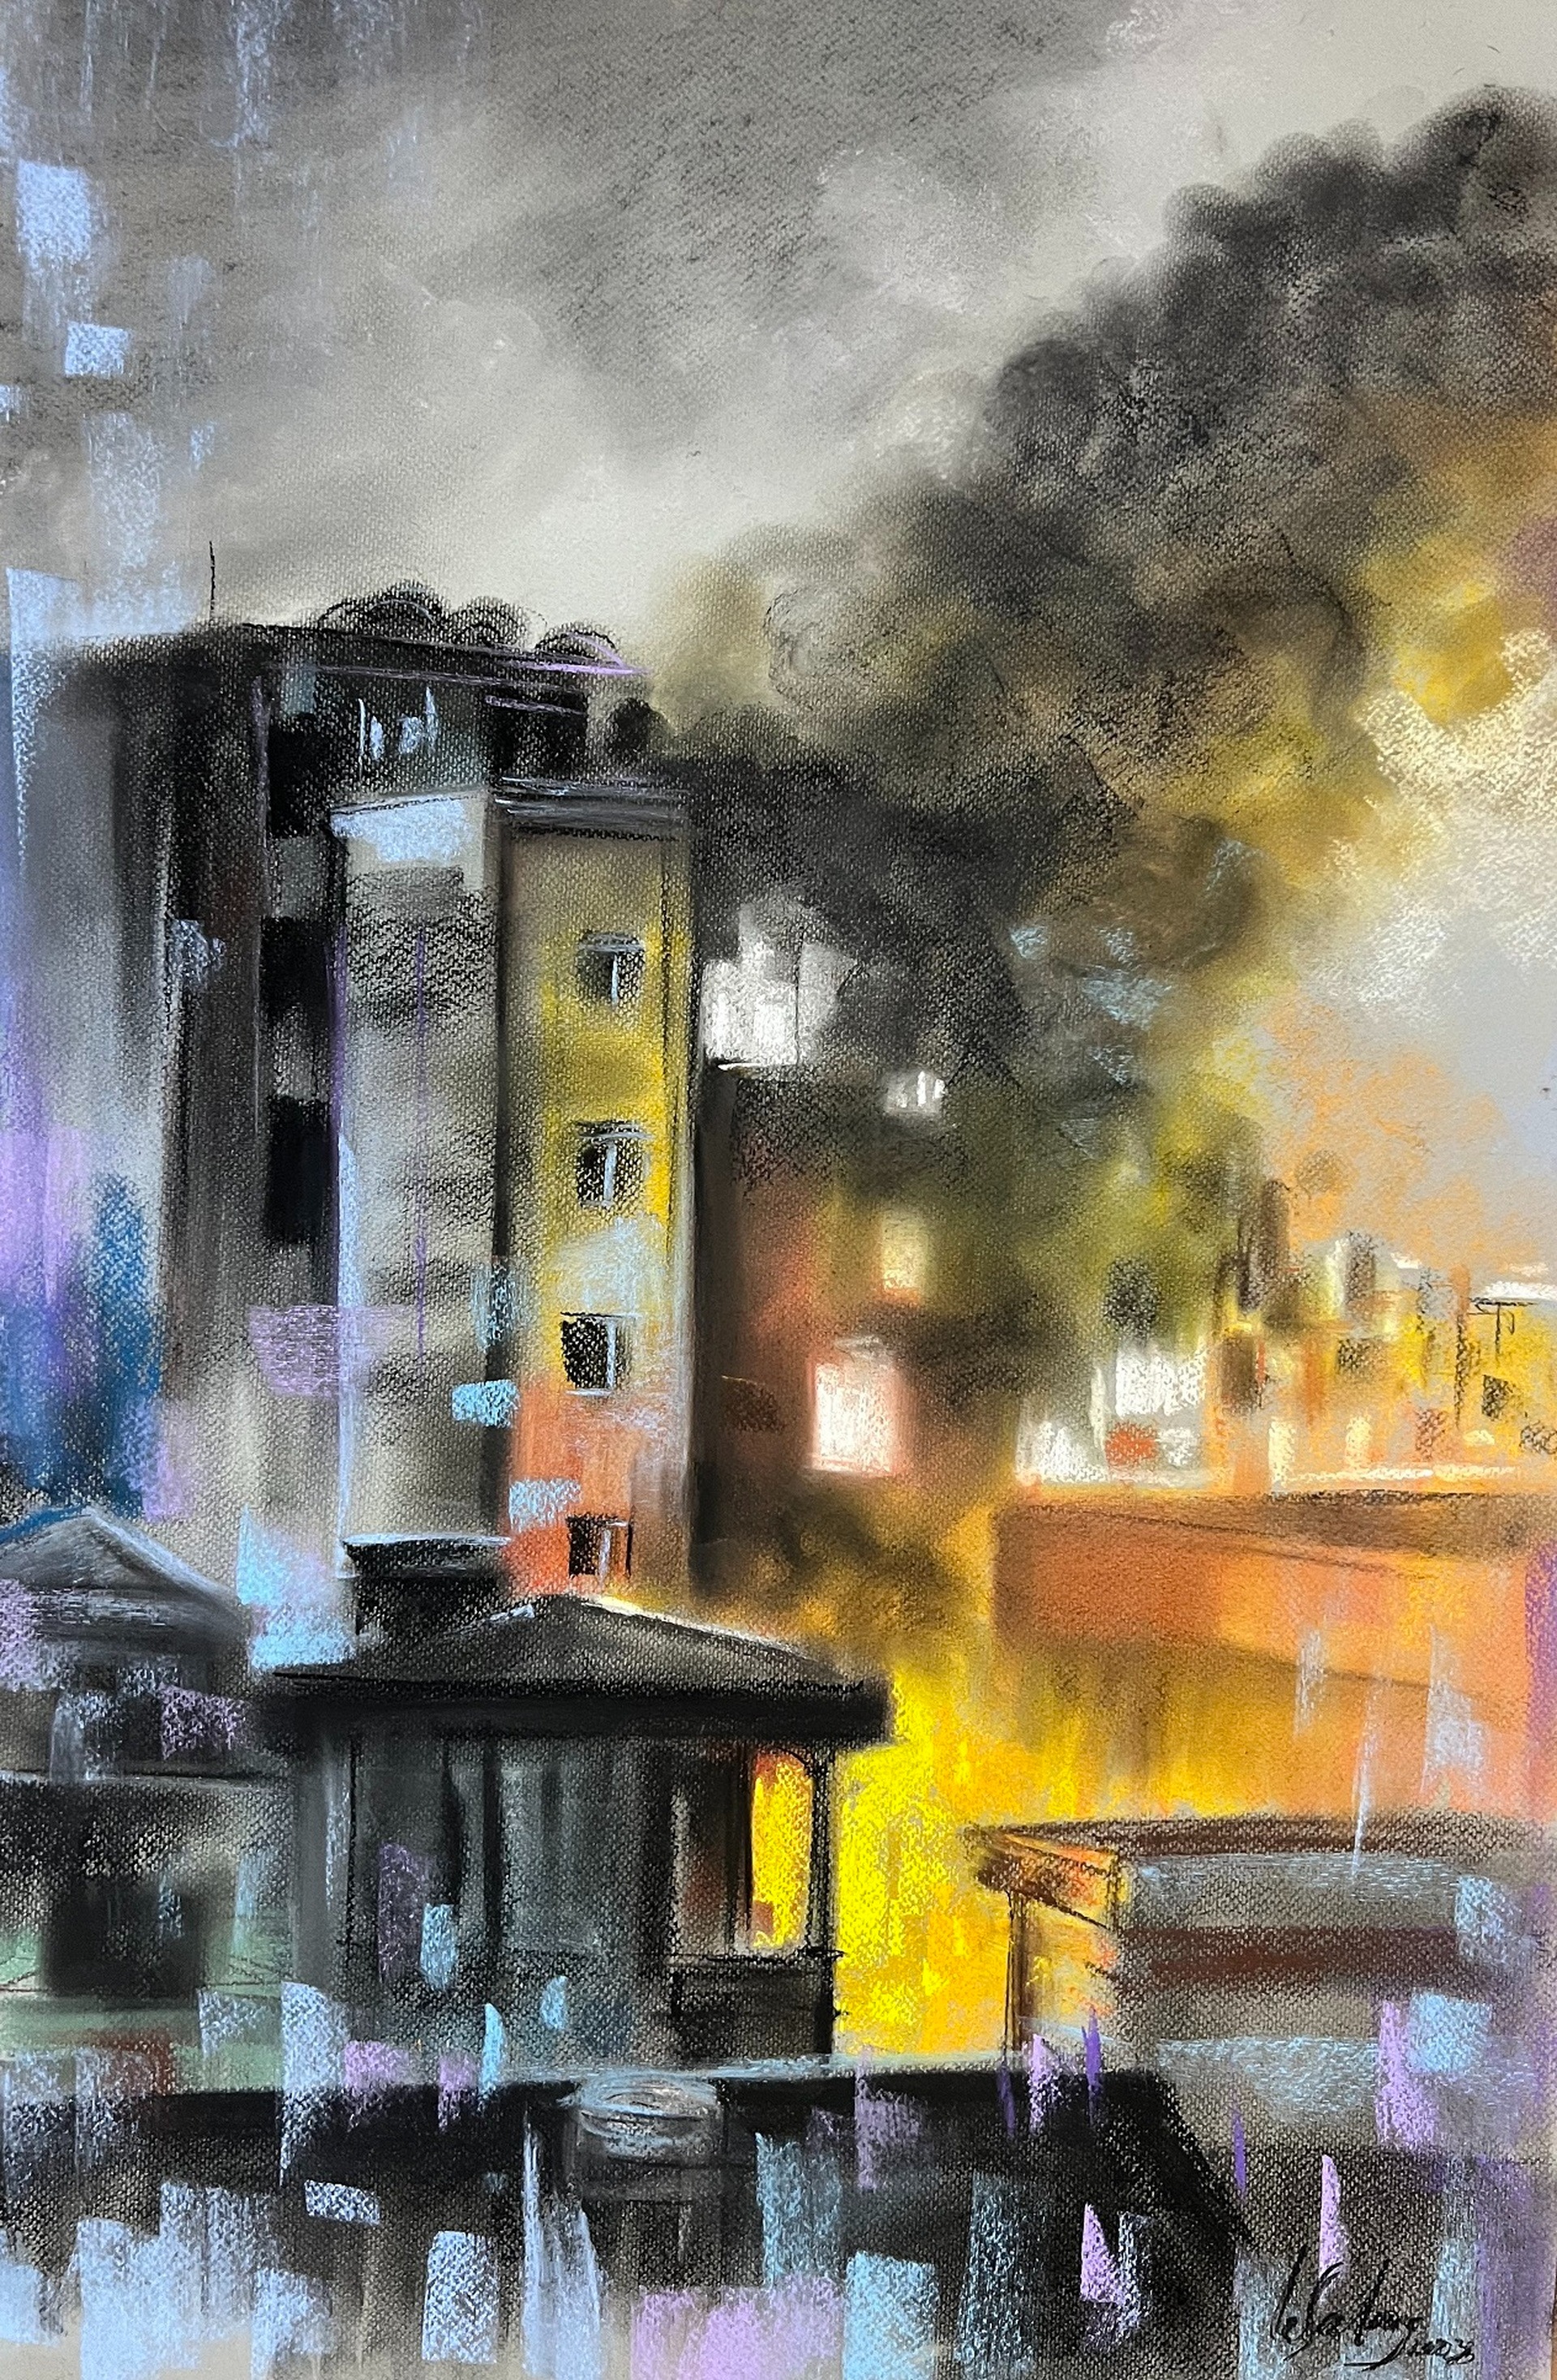 Bộ tranh khắc họa đêm chạy đua khói lửa cứu người trong vụ cháy chung cư mini ở Hà Nội - Ảnh 1.